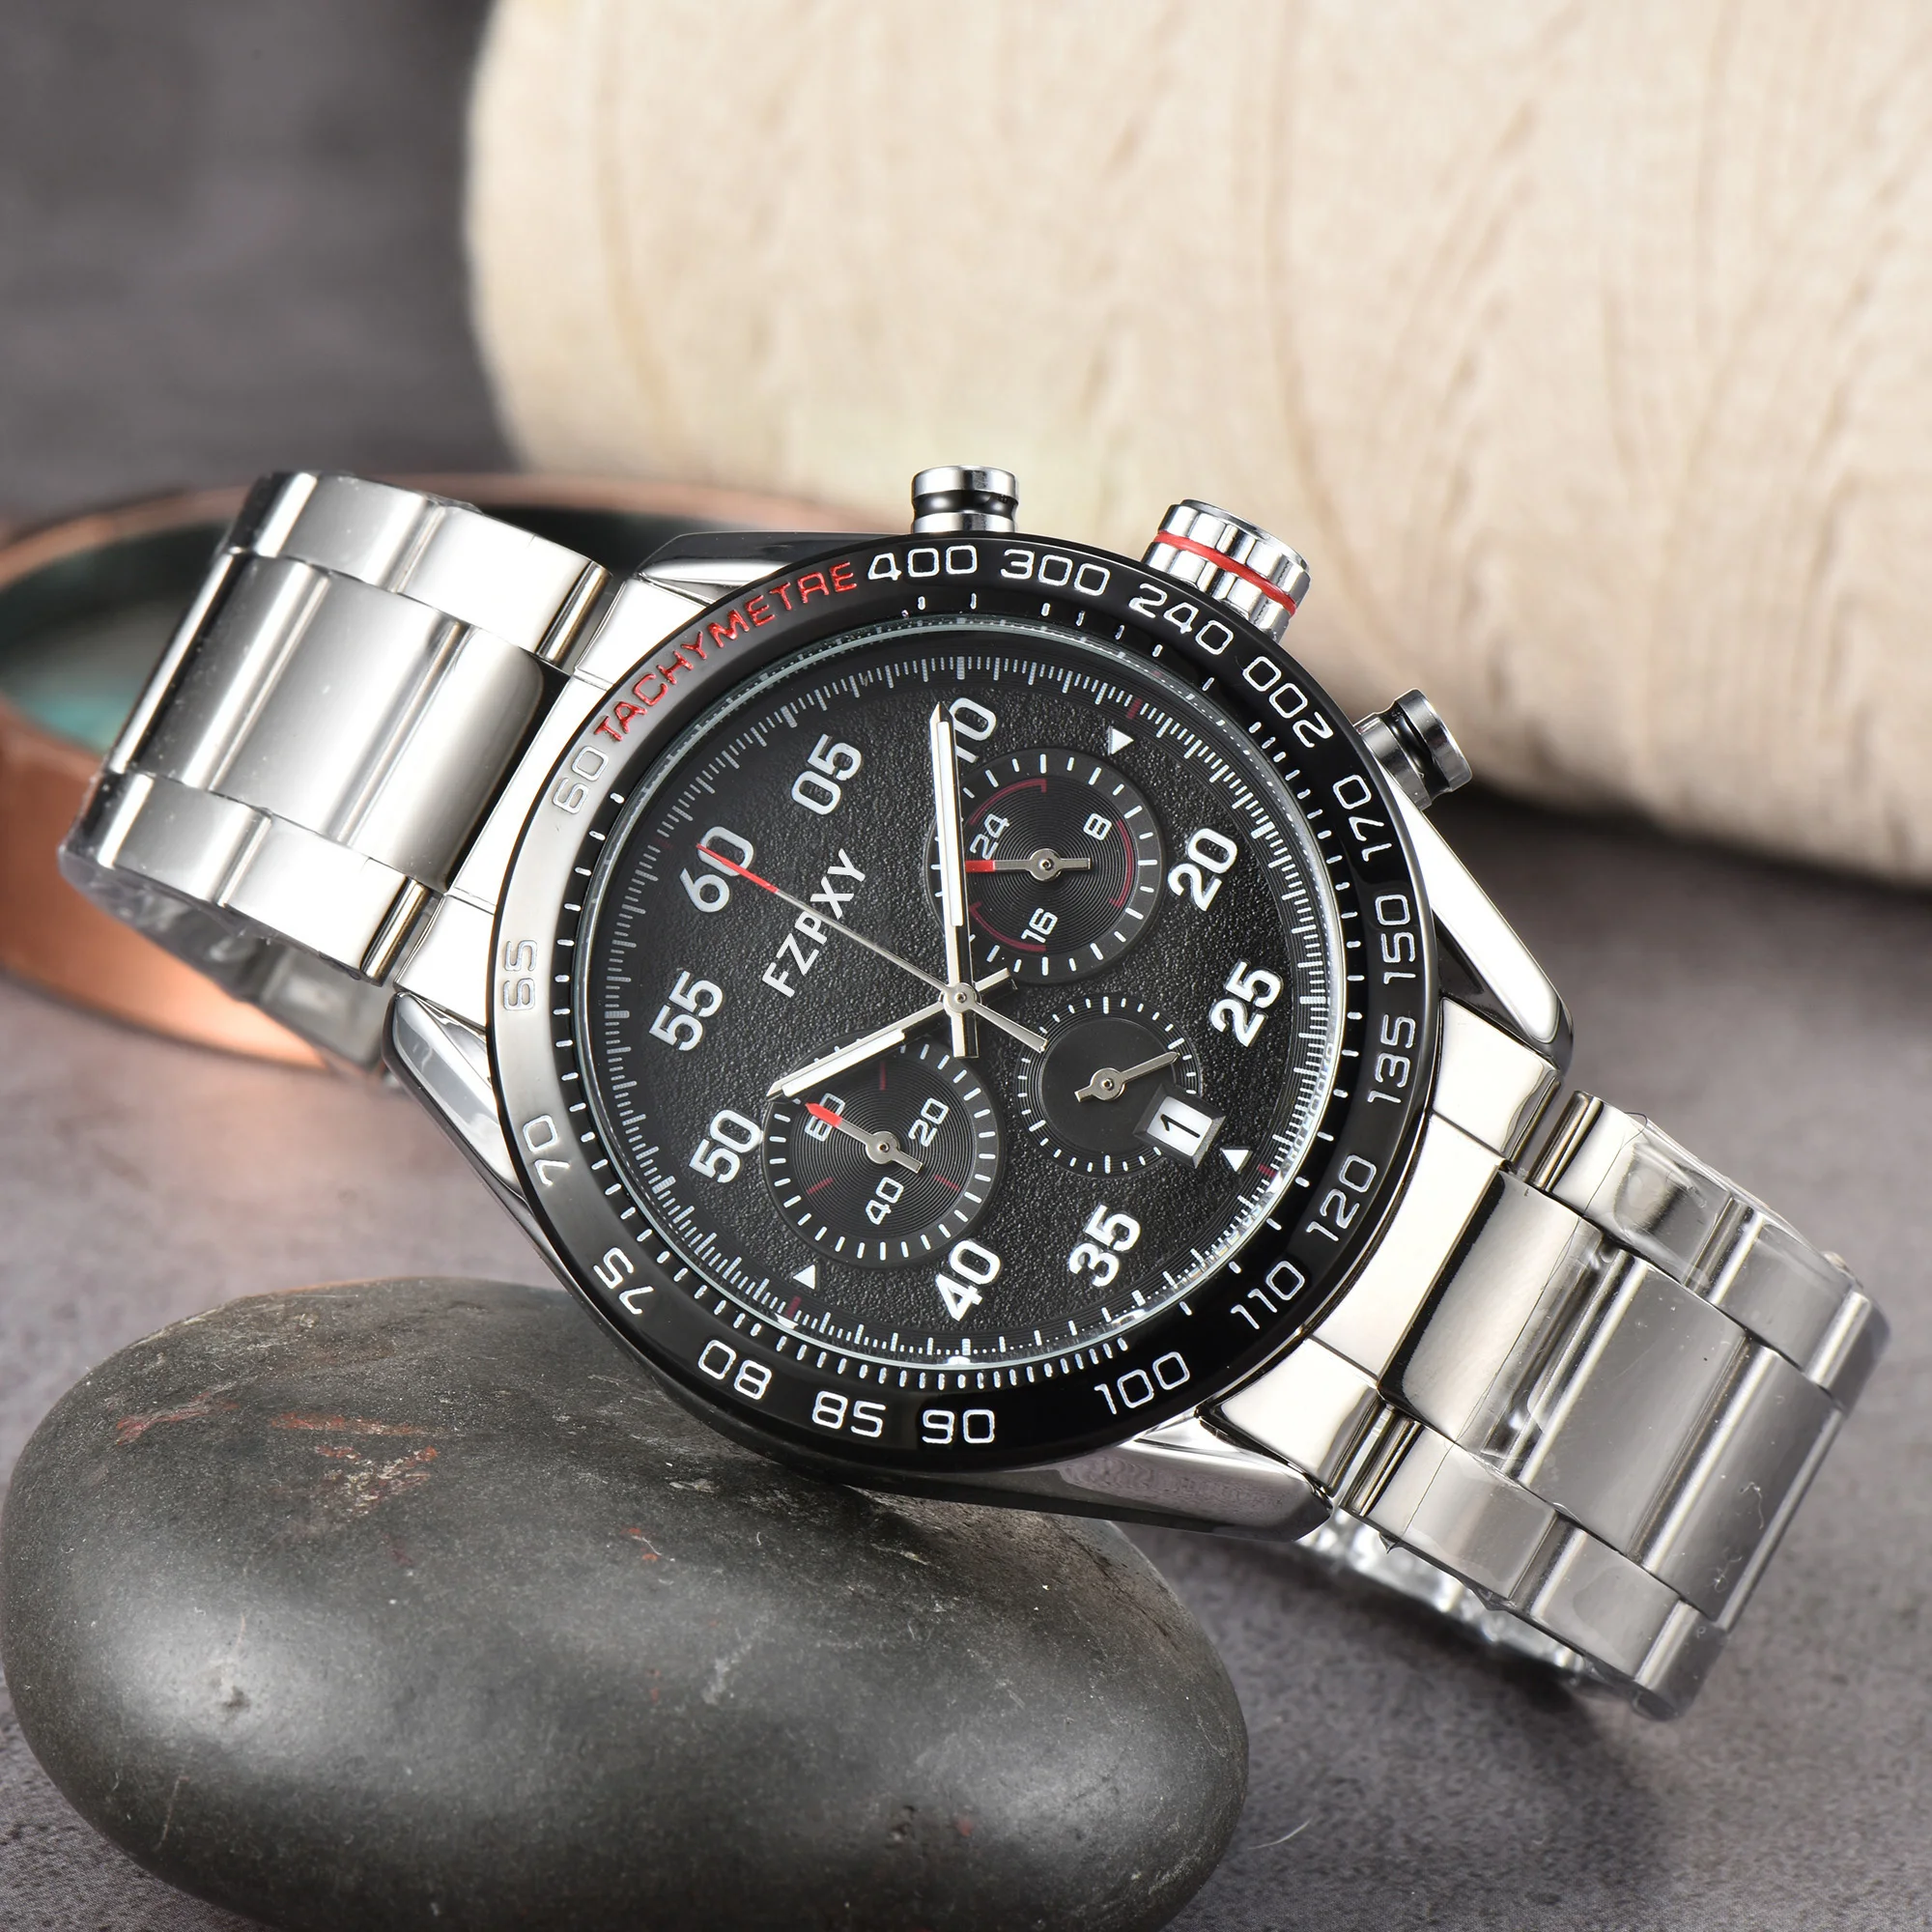 

Часы наручные TA109 мужские/женские с хронографом, брендовые многофункциональные классические стальные, в деловом стиле, ААА